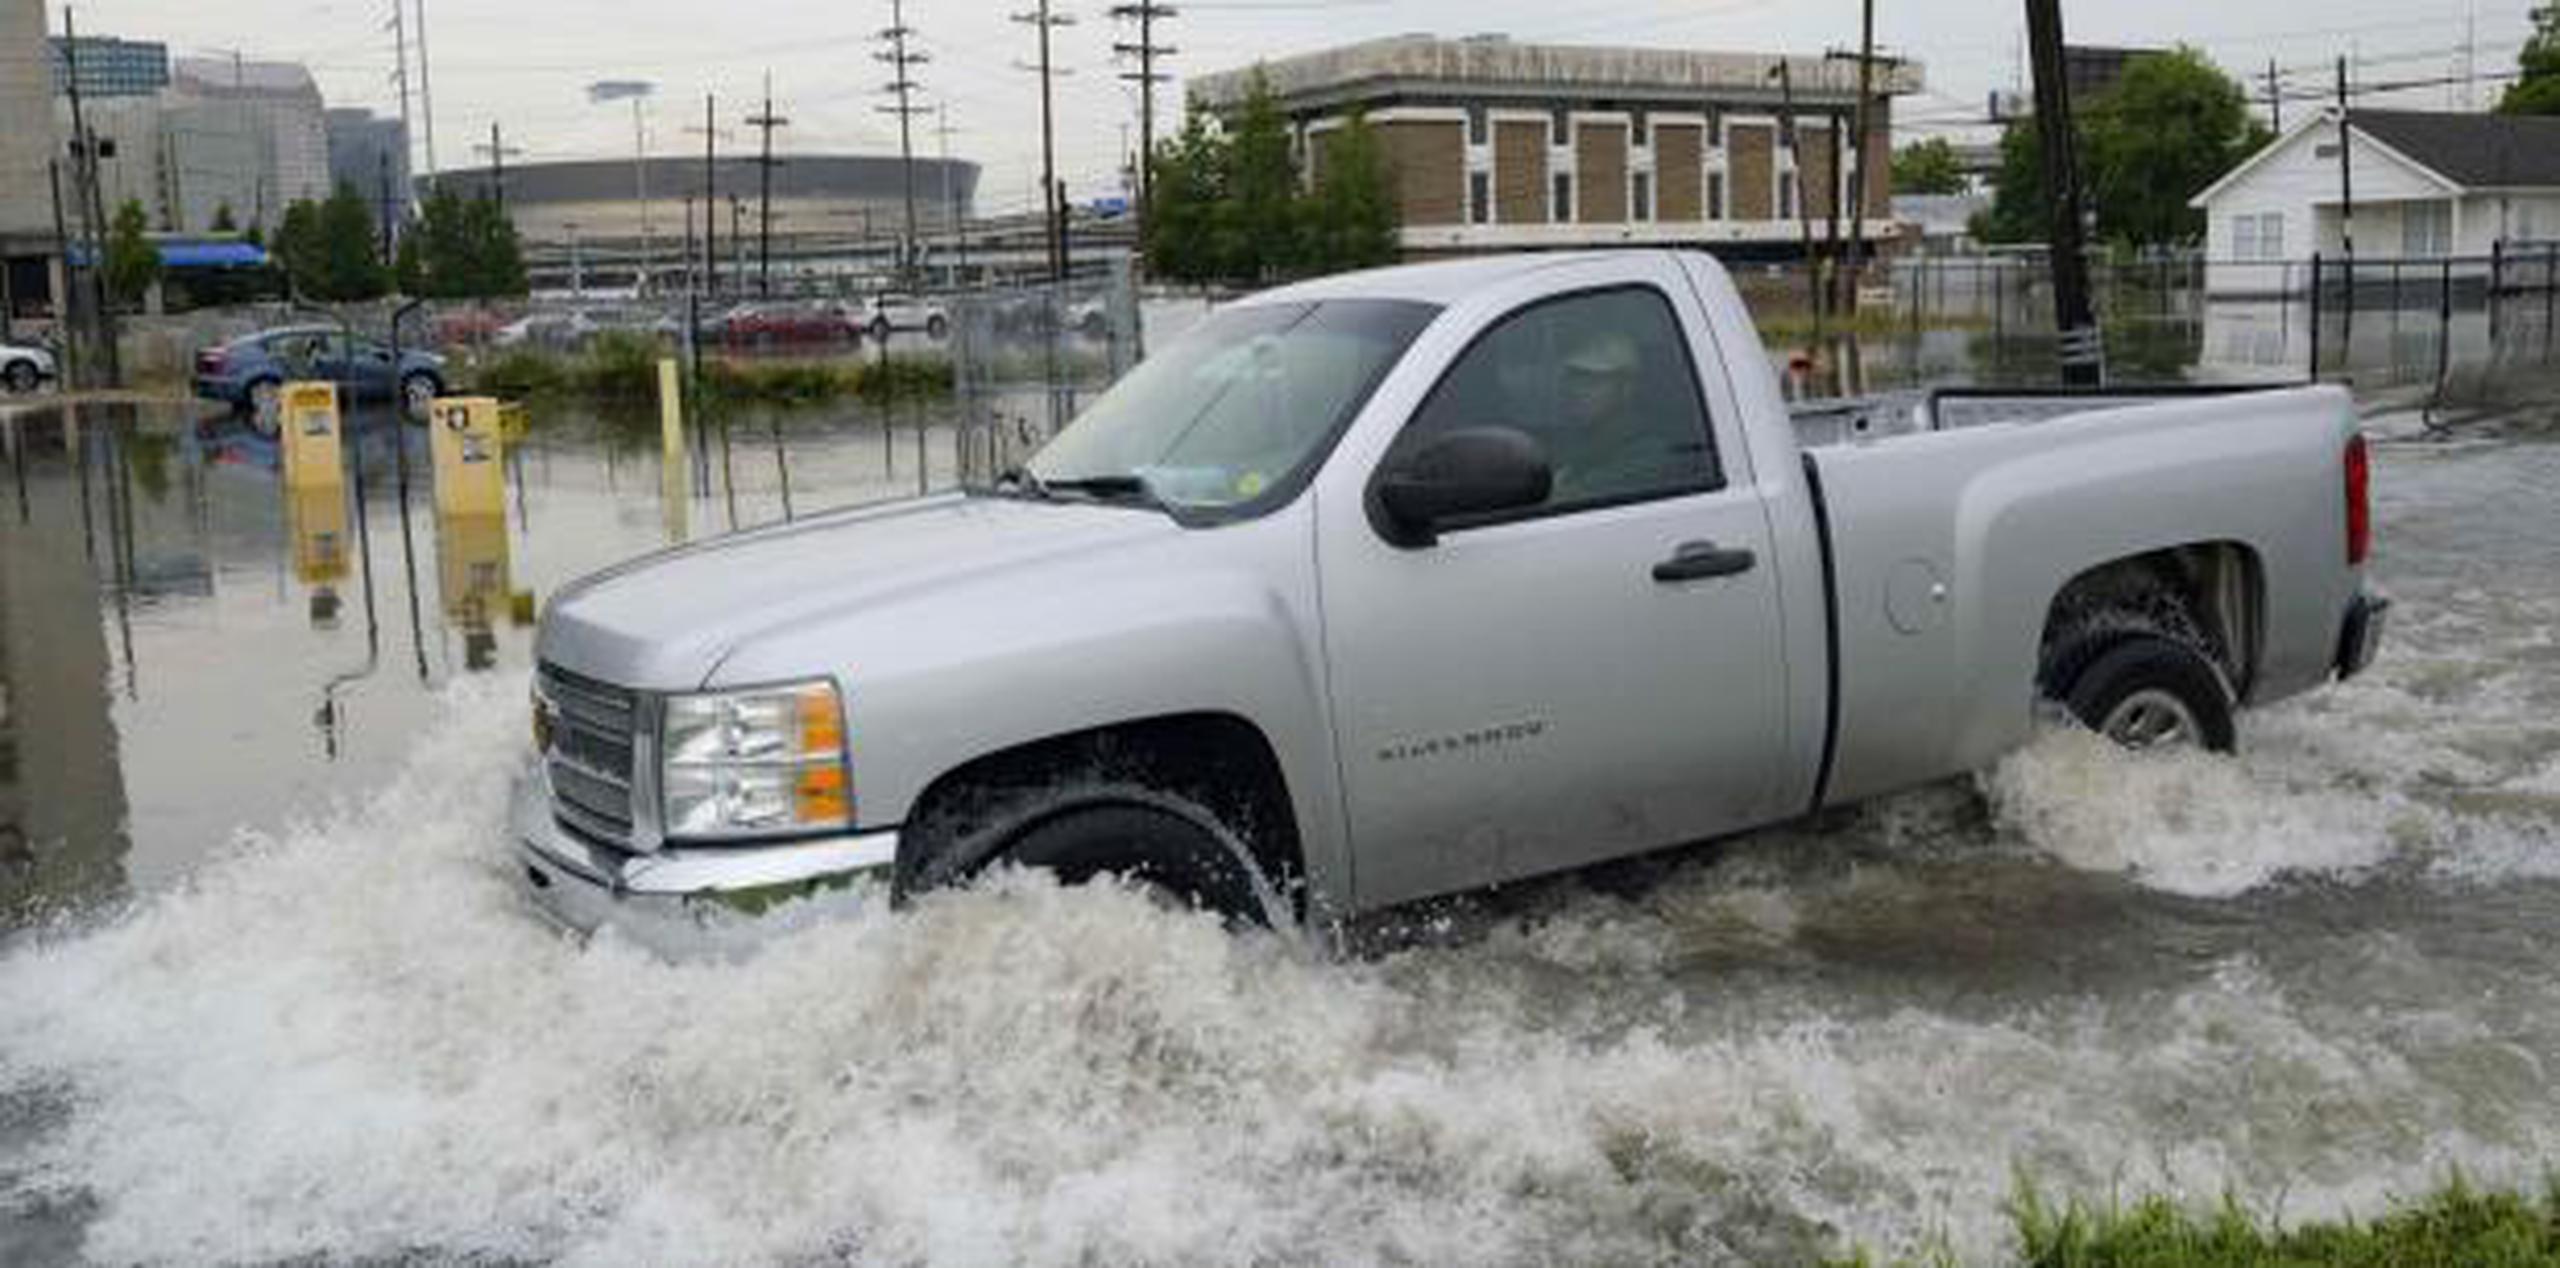 Las lluvias se han comenzado a dejar sentir en el área de New Orleans. (AP)

